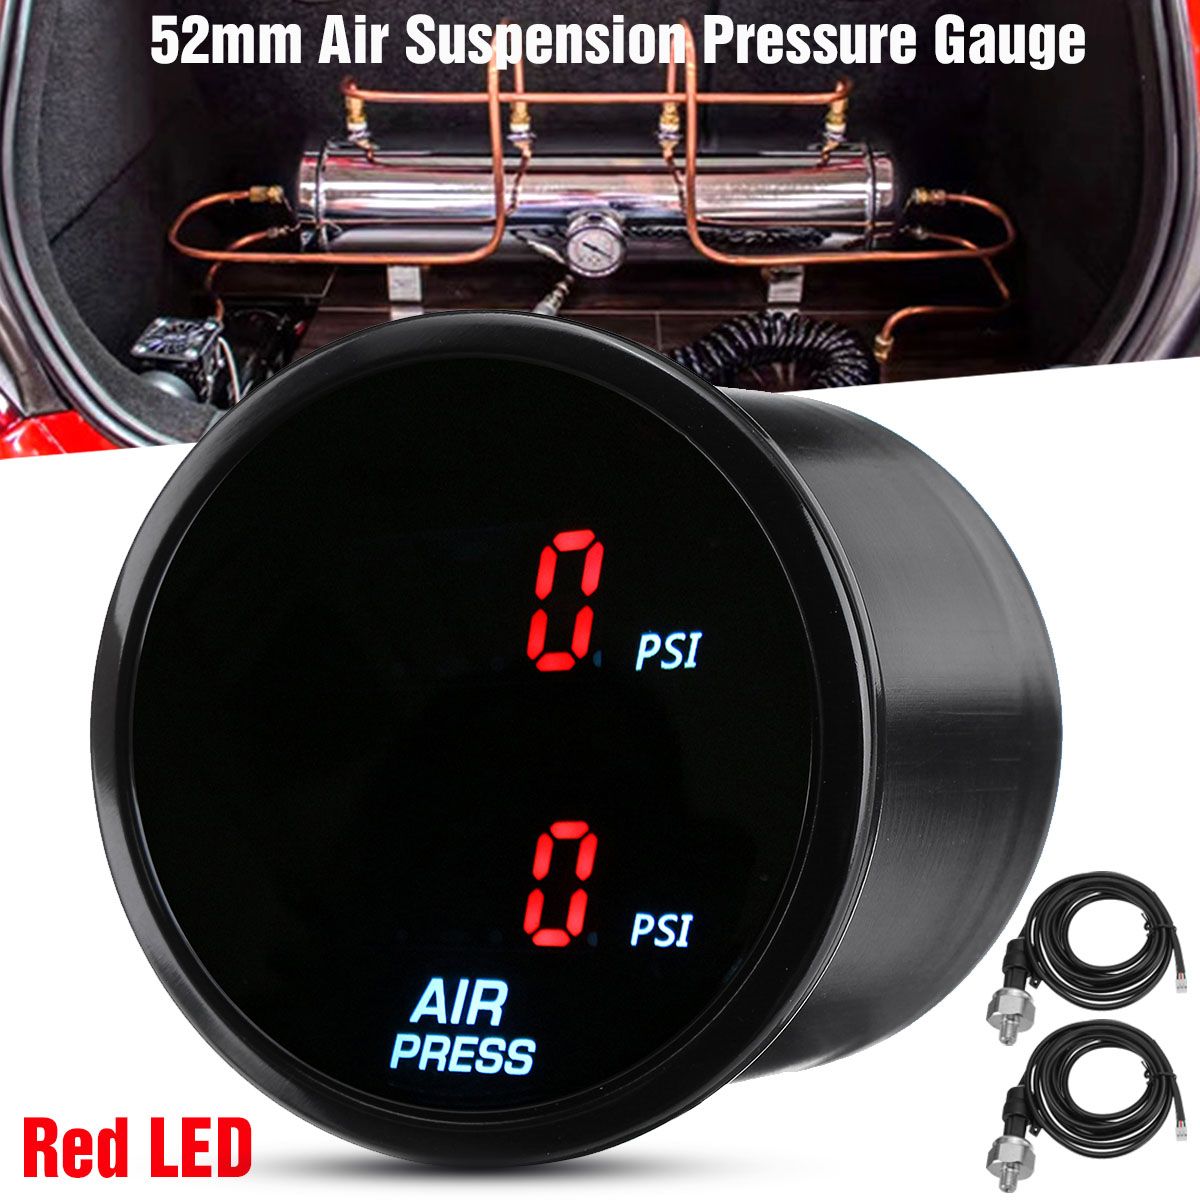 2-52mm-Dual-Digital-Air-Pressure-Gauge-PSI-Air-Suspension-Meter-Red-LED-1710110